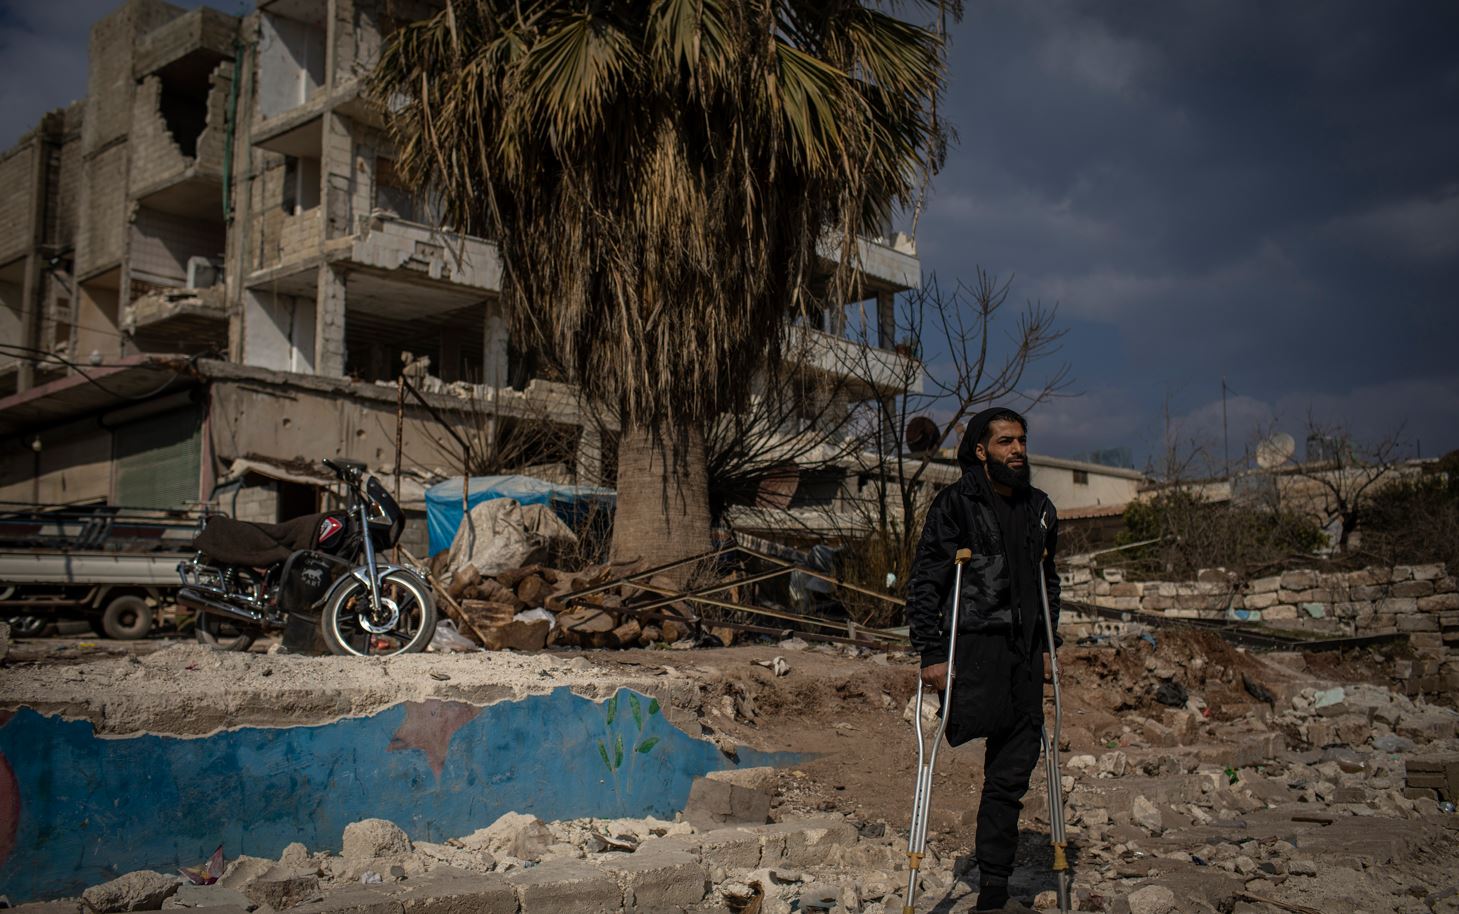 Muhammad Al Halbouni, de 31 años, perdió una pierna en un bombardeo hace años. En el terremoto a principios de febrero perdió a sus dos hijas. (Diego Ibarra Sanchez/The New York Times)